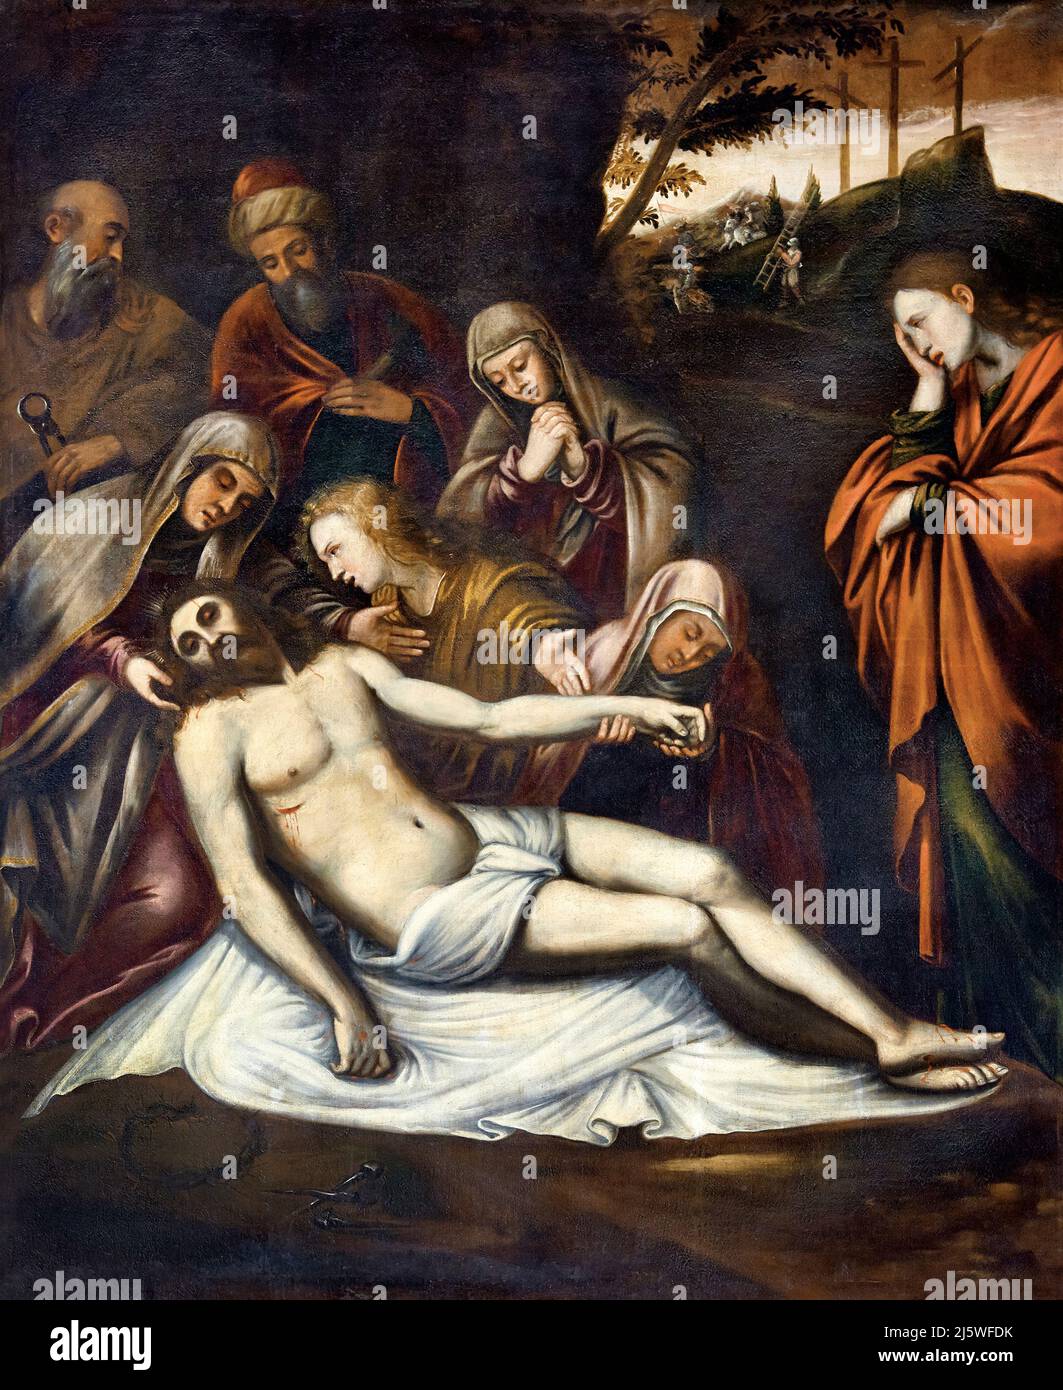 Cristo deposto - olio su tela - posto bresciano di fine XVI secolo - Borgosatollo (Bs),Italia, chiesa parrocchiale di S.Maria Assunta Foto Stock